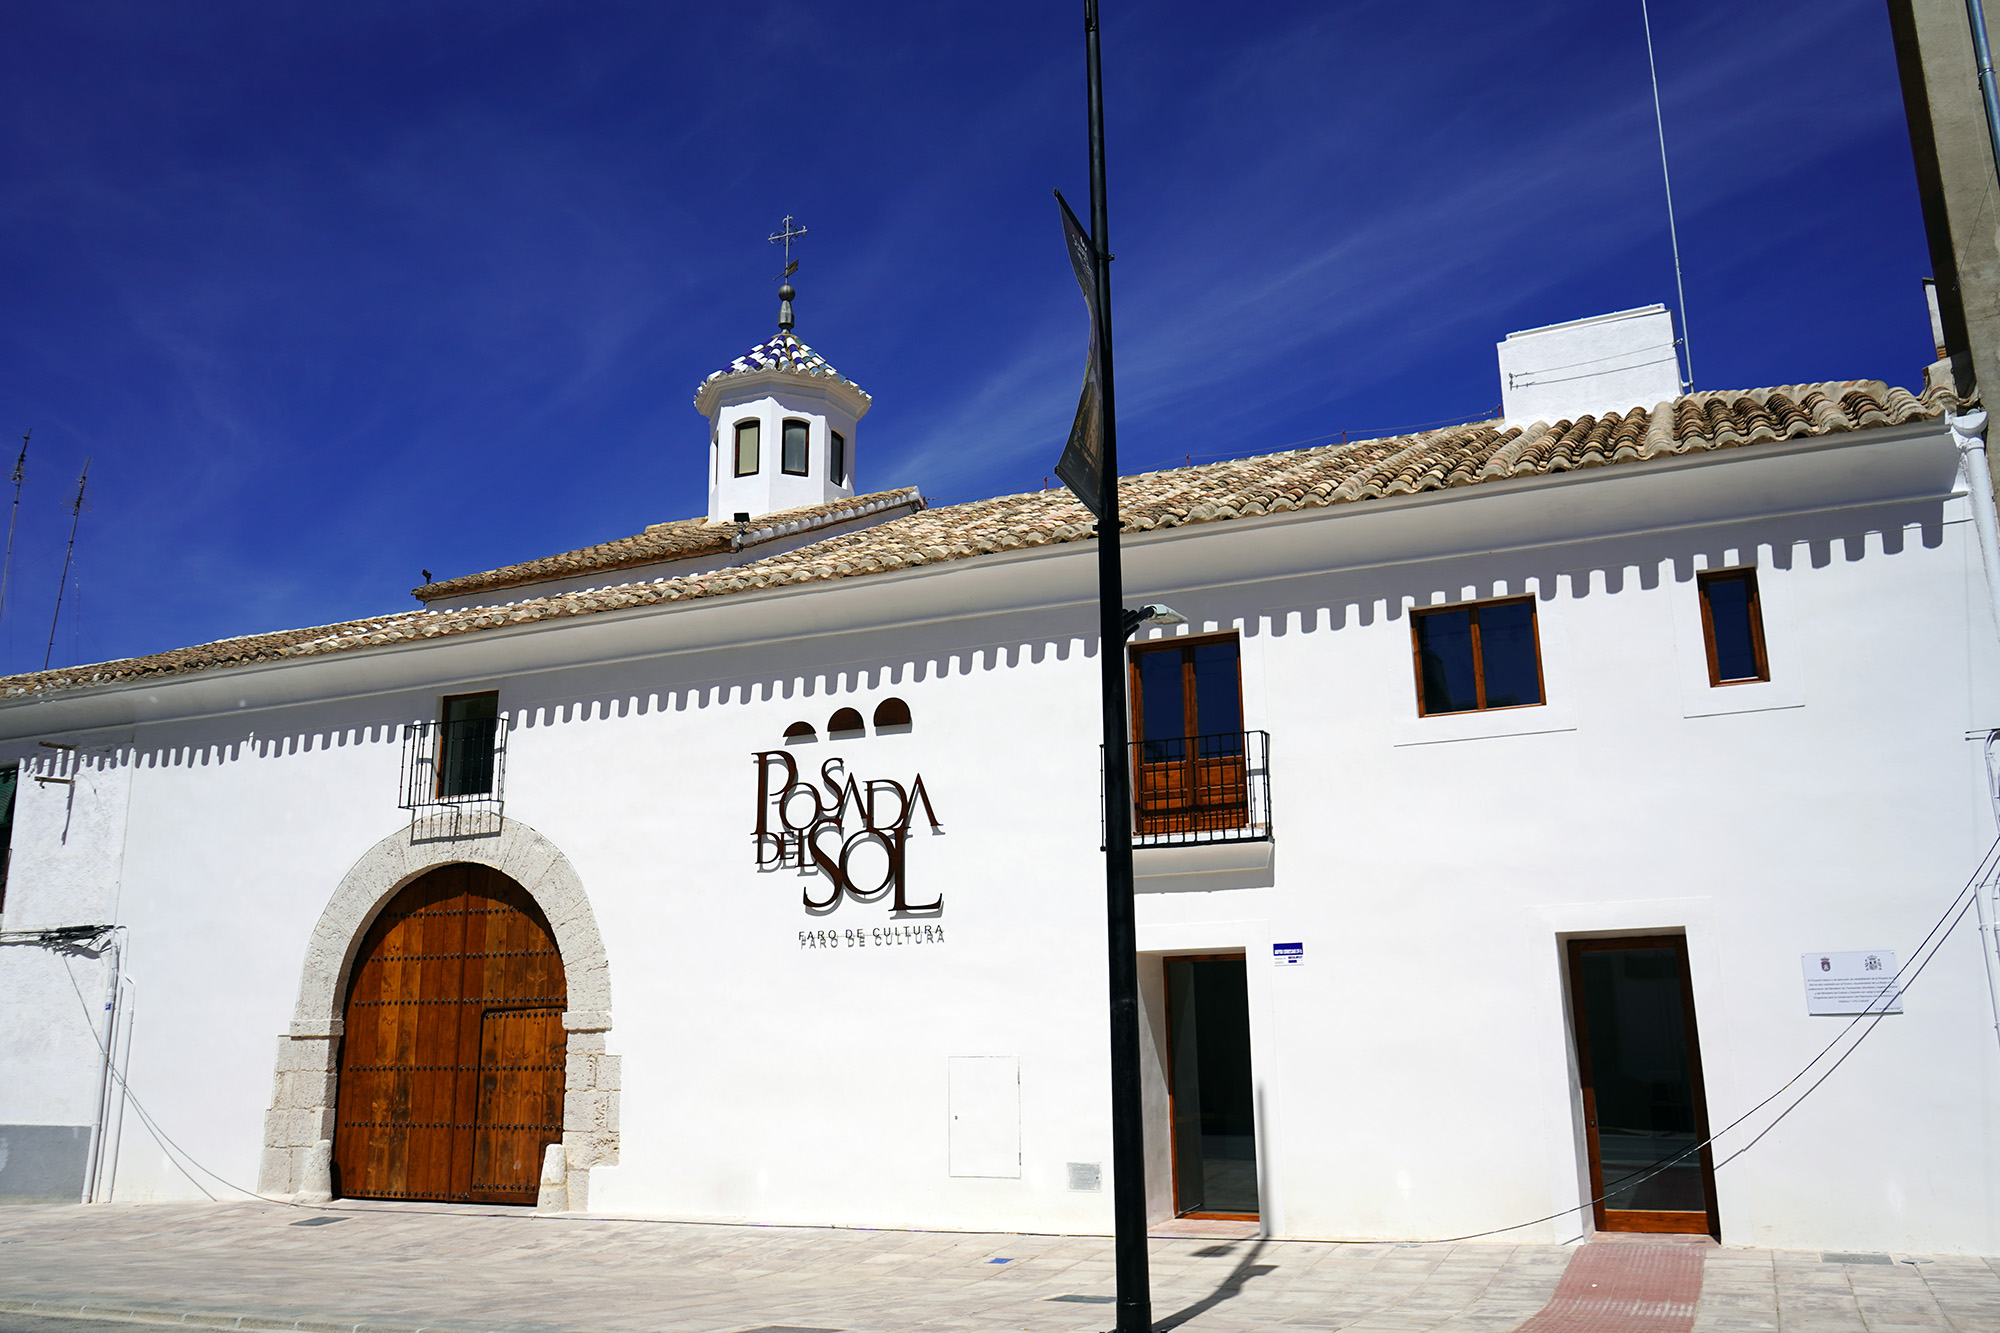 Posada del Sol de La Roda, Albacete. Imagen del Ayuntamiento de La Roda.